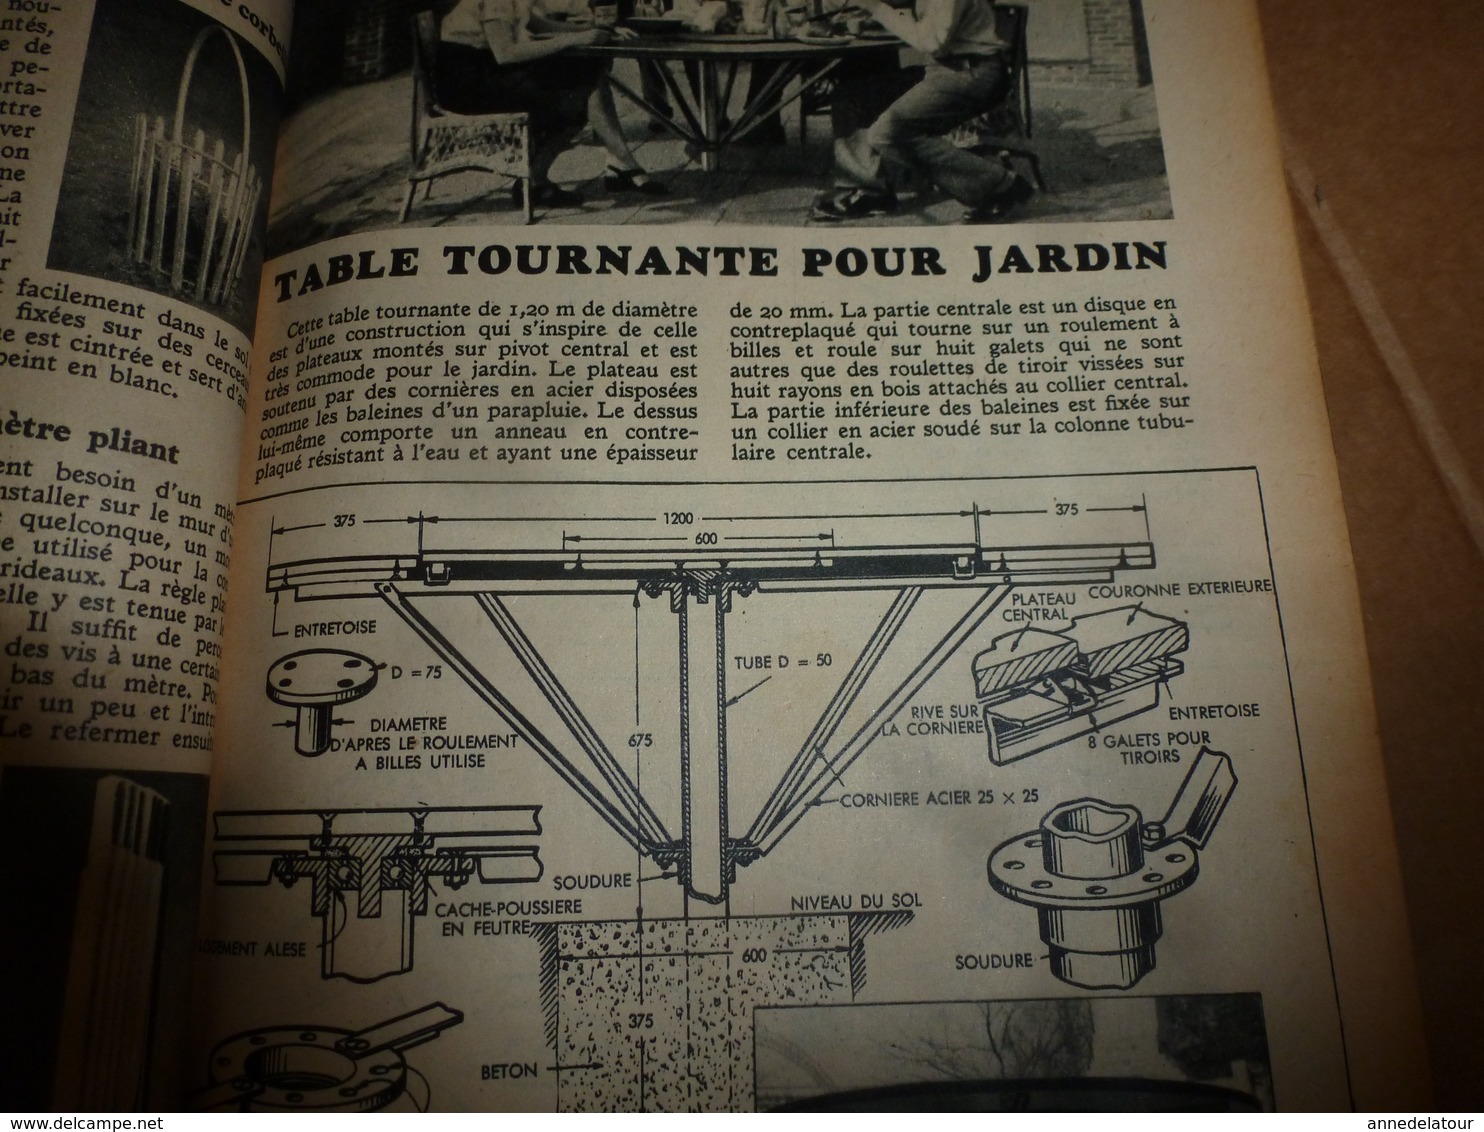 1953 MÉCANIQUE POPULAIRE: Chercheur d'or en usine ; Prospecter l'uranium; Faire une table tournante pour le jardin; etc